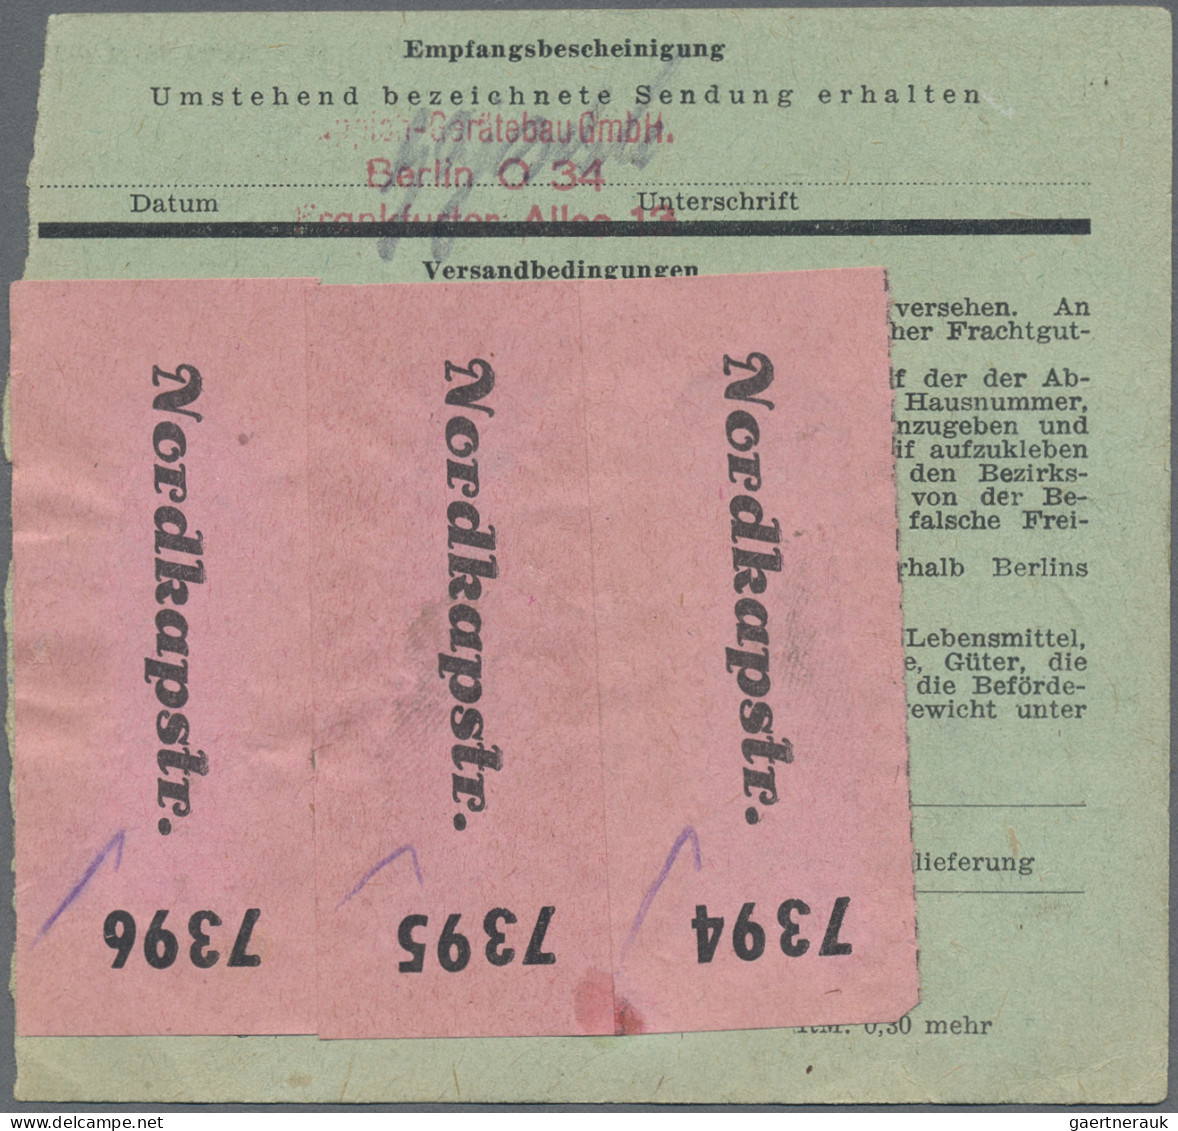 Deutsches Reich - Privatpost (Stadtpost): 1944, BERLIN/Stadt-Güter-Verkehr, 3x 3 - Private & Local Mails